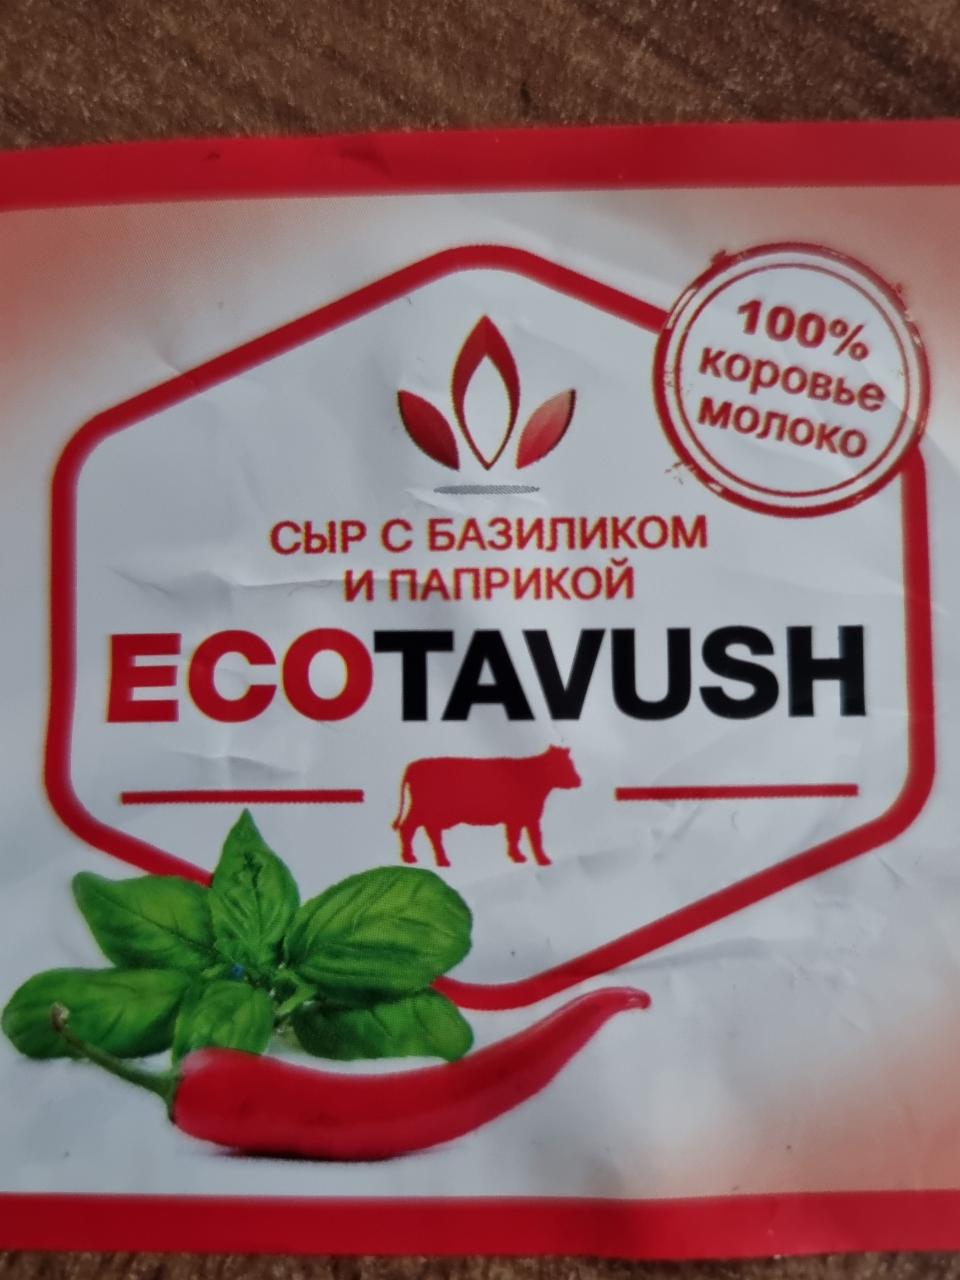 Фото - Сыр с базиликом и паприкой Ecotavush